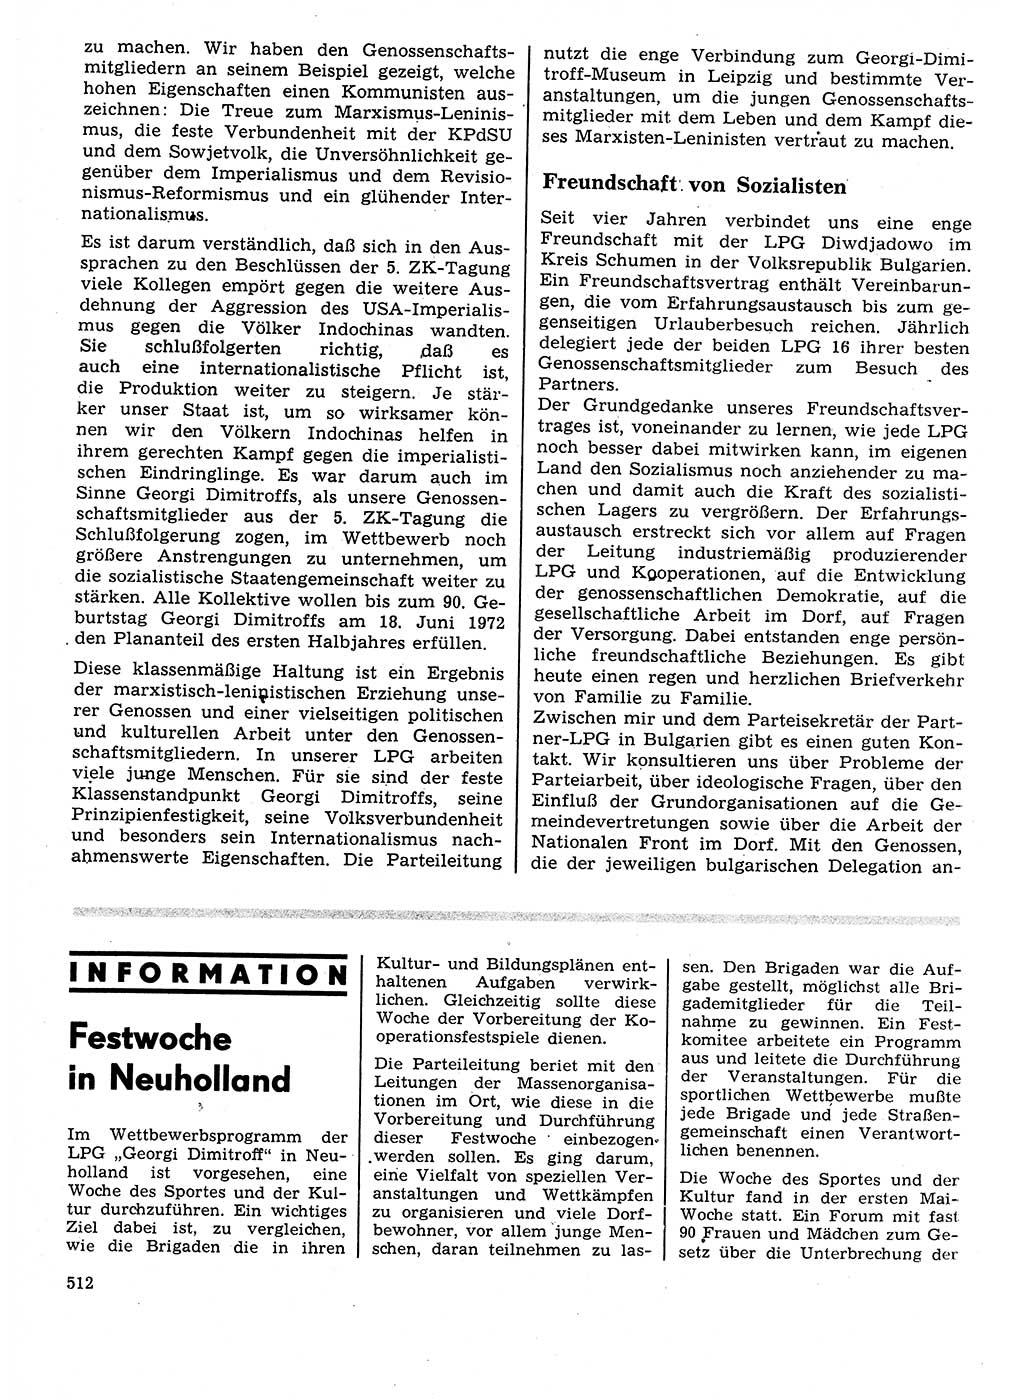 Neuer Weg (NW), Organ des Zentralkomitees (ZK) der SED (Sozialistische Einheitspartei Deutschlands) für Fragen des Parteilebens, 27. Jahrgang [Deutsche Demokratische Republik (DDR)] 1972, Seite 512 (NW ZK SED DDR 1972, S. 512)